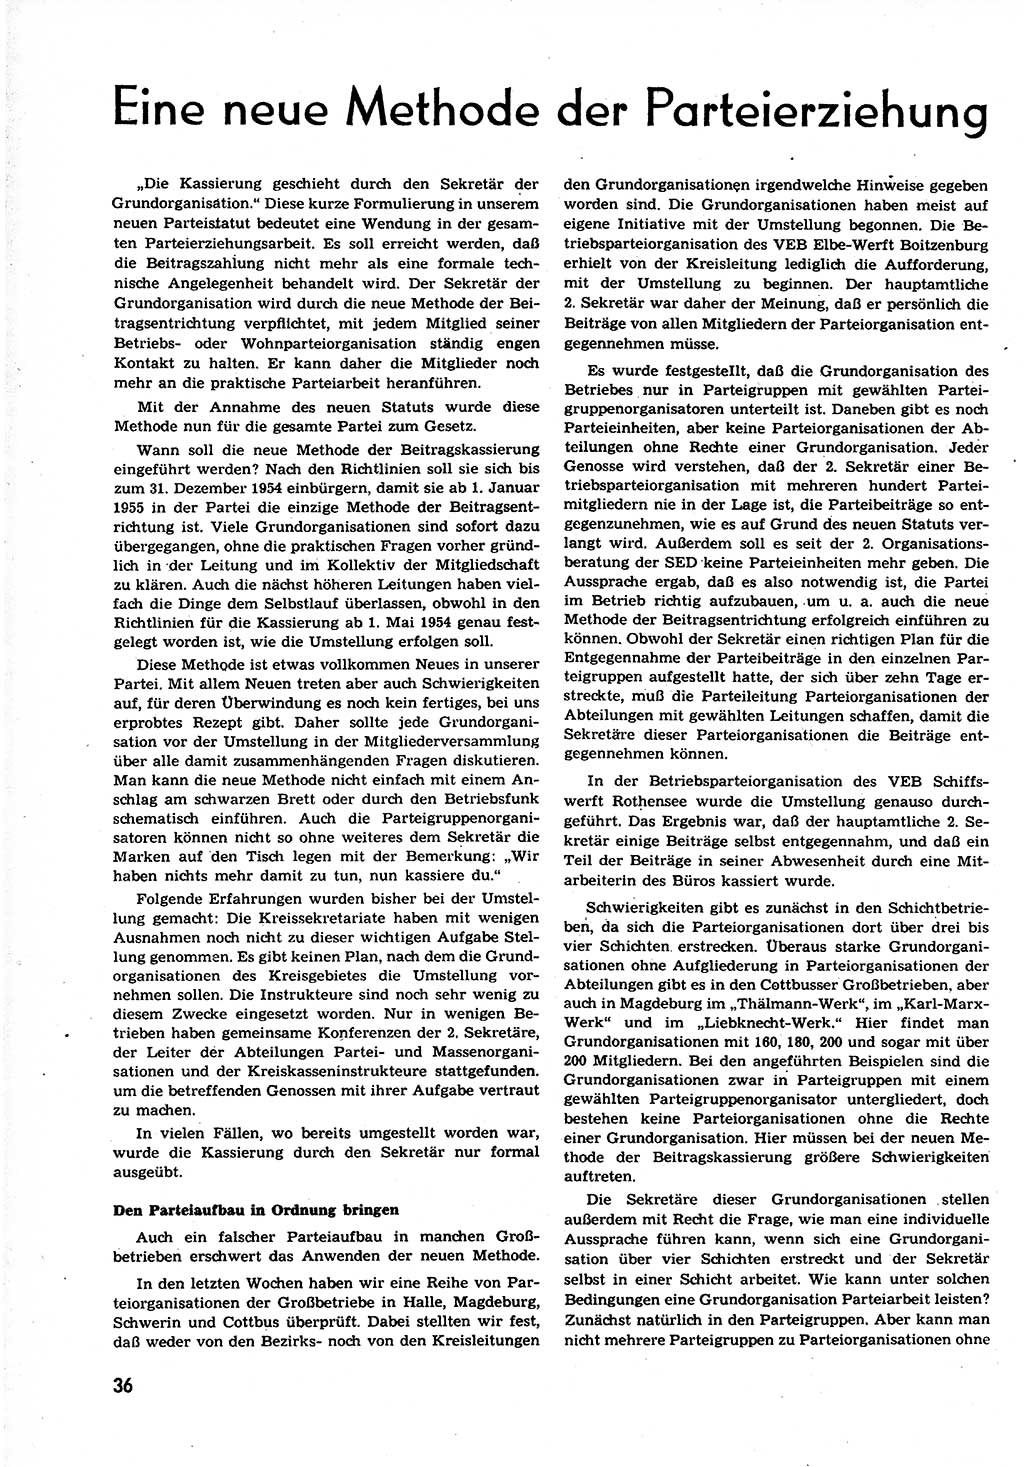 Neuer Weg (NW), Organ des Zentralkomitees (ZK) der SED (Sozialistische Einheitspartei Deutschlands) für alle Parteiarbeiter, 9. Jahrgang [Deutsche Demokratische Republik (DDR)] 1954, Heft 12/36 (NW ZK SED DDR 1954, H. 12/36)